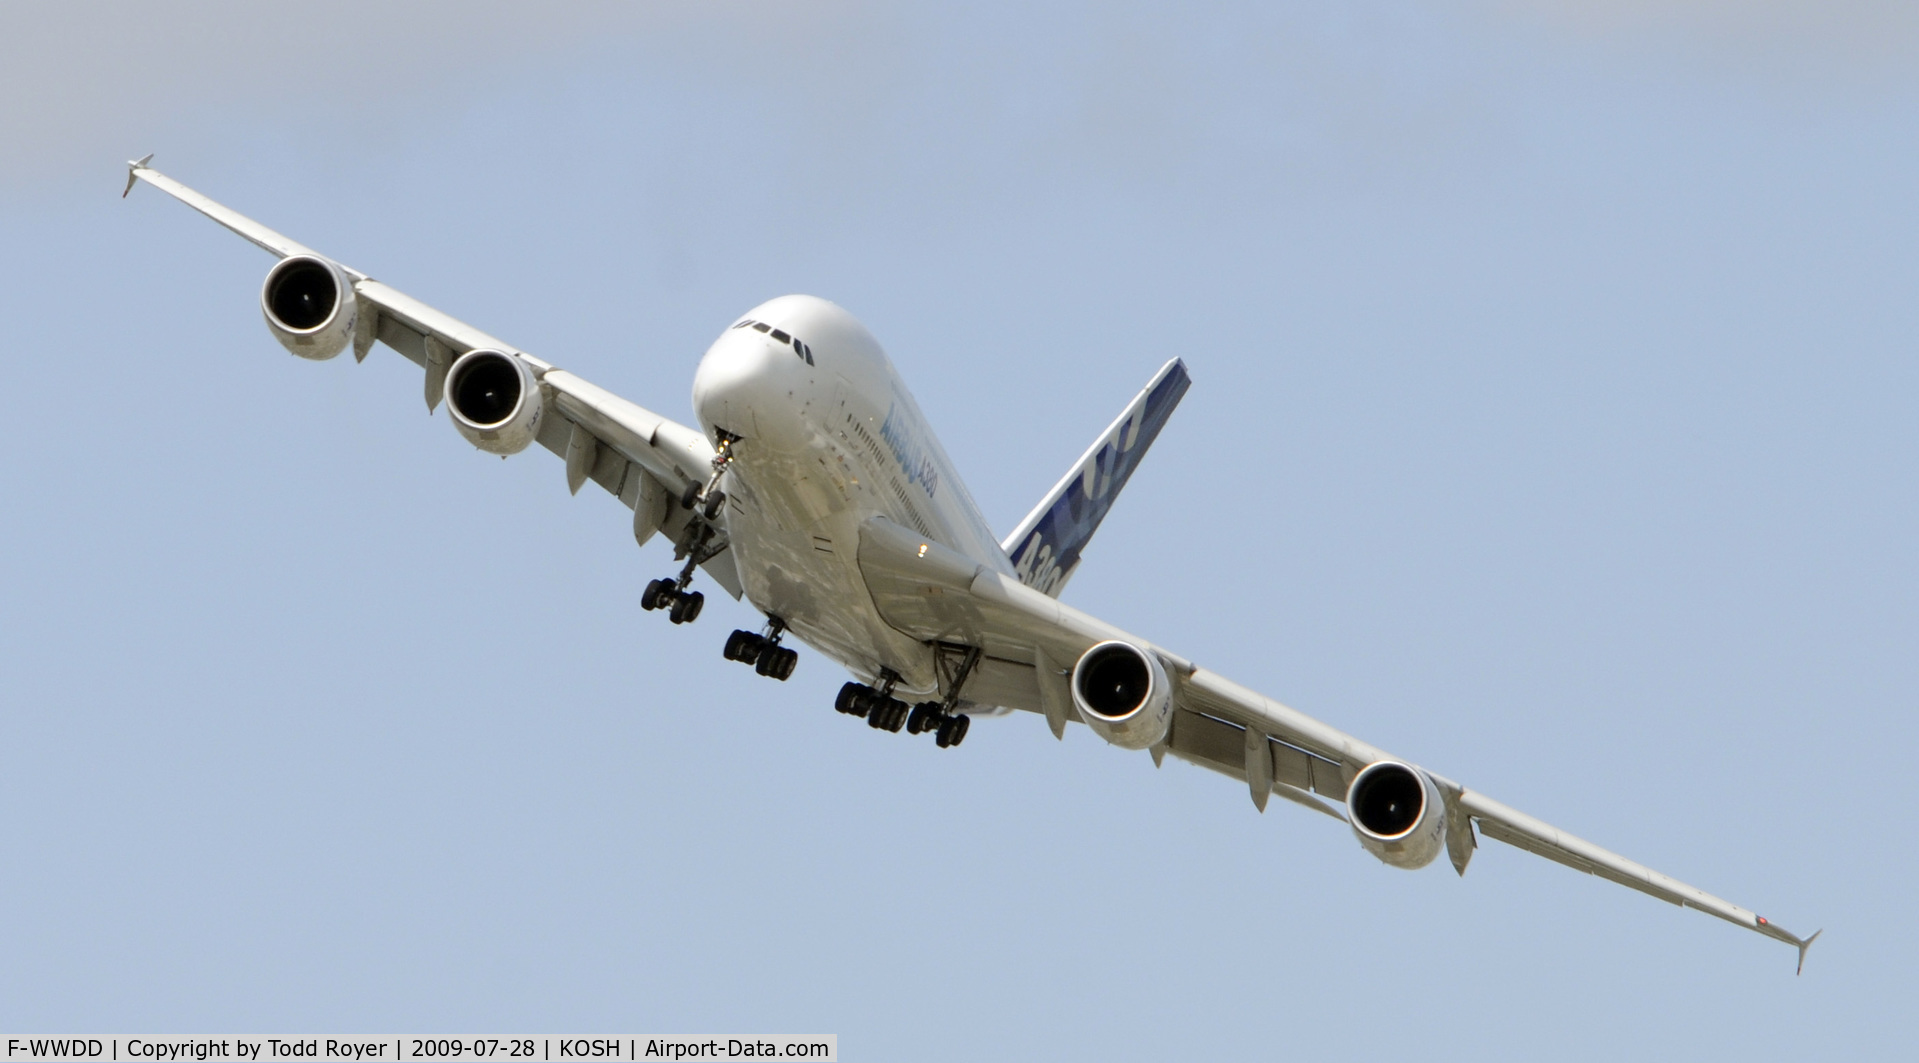 F-WWDD, 2005 Airbus A380-861 C/N 004, EAA AIRVENTURE 2009